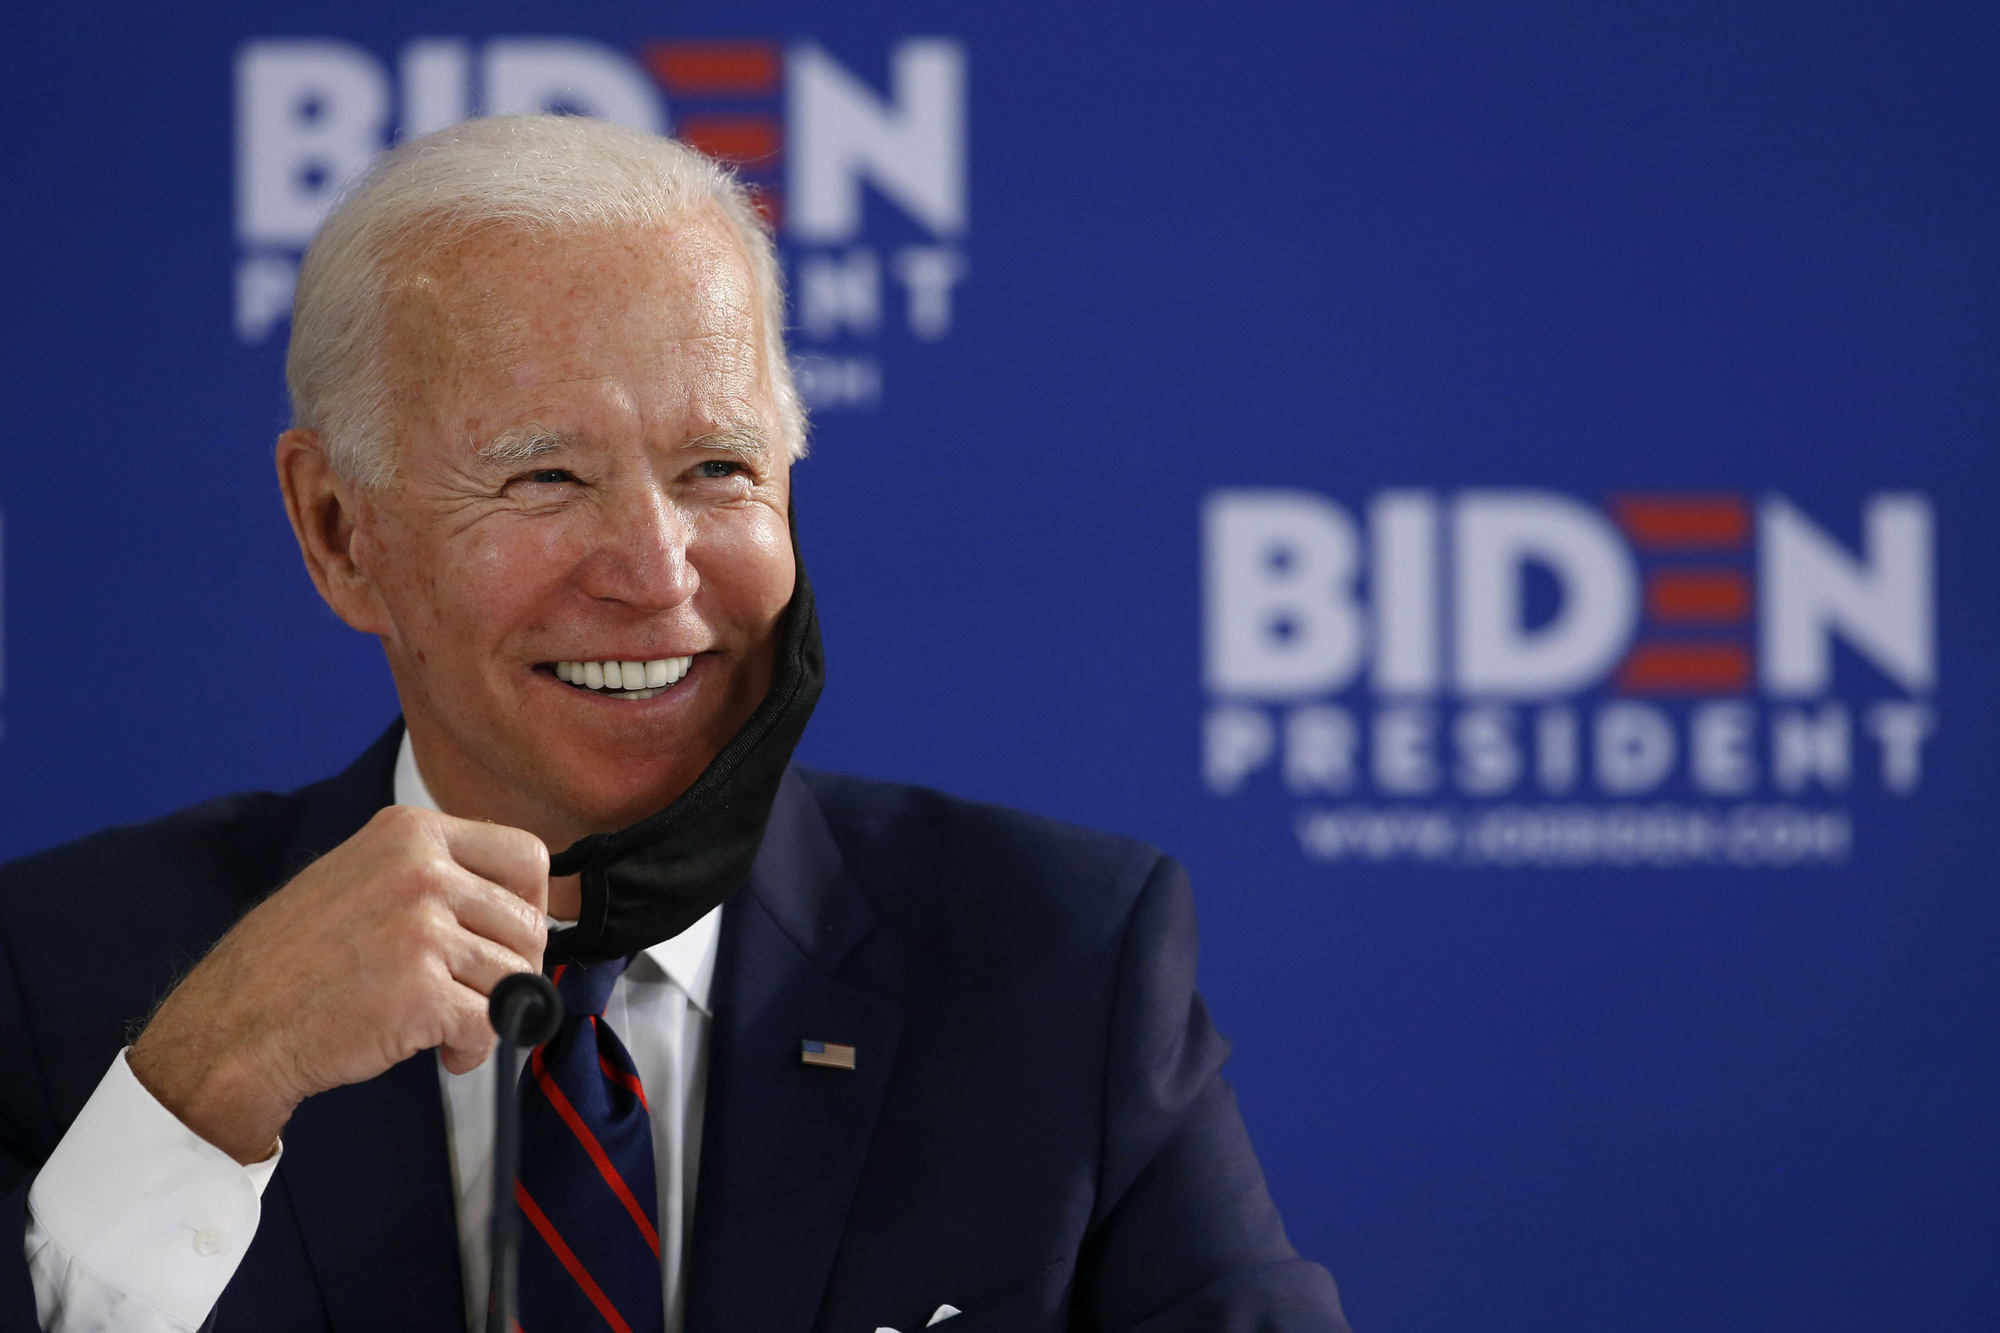 Biden giành được kỷ lục lần đầu tiên xảy ra trong lịch sử bầu cử Tổng thống Mỹ - Ảnh 1.